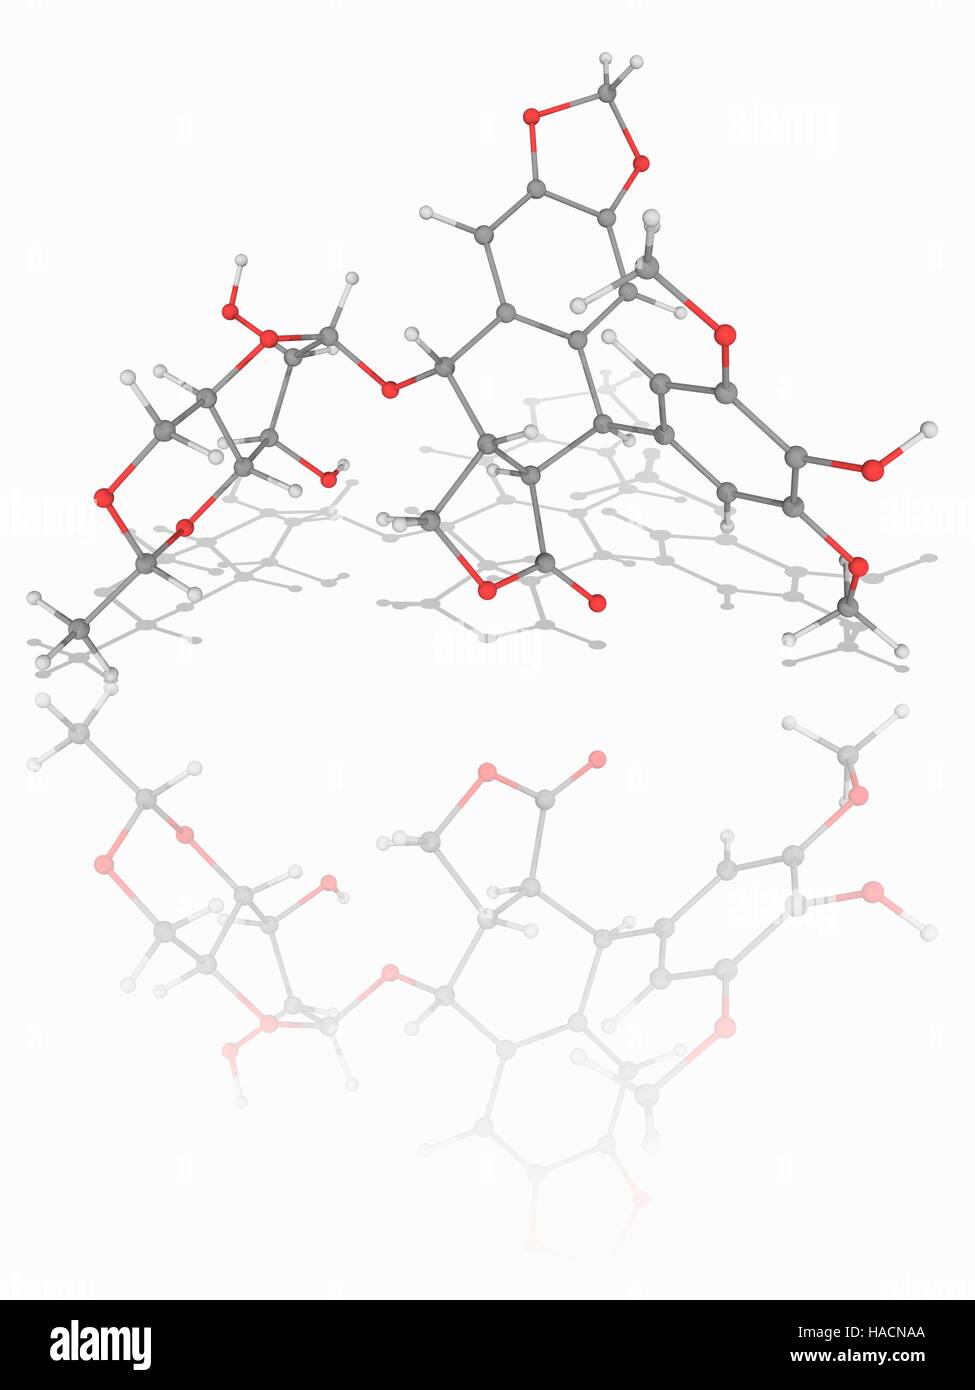 Etoposid. Molekülmodell der Chemotherapie Medikament Etoposid (C29. H32. O13). Dies ist ein Topoisomerase-Hemmer gegen Krebserkrankungen wie z. B. Ewing Sarkom, Lungenkrebs, Hodenkrebs, Lymphome und lymphatische Leukämie eingesetzt. Atome als Kugeln dargestellt werden und sind farblich gekennzeichnet: Kohlenstoff (grau), Wasserstoff (weiß) und Sauerstoff (rot). Abbildung. Stockfoto